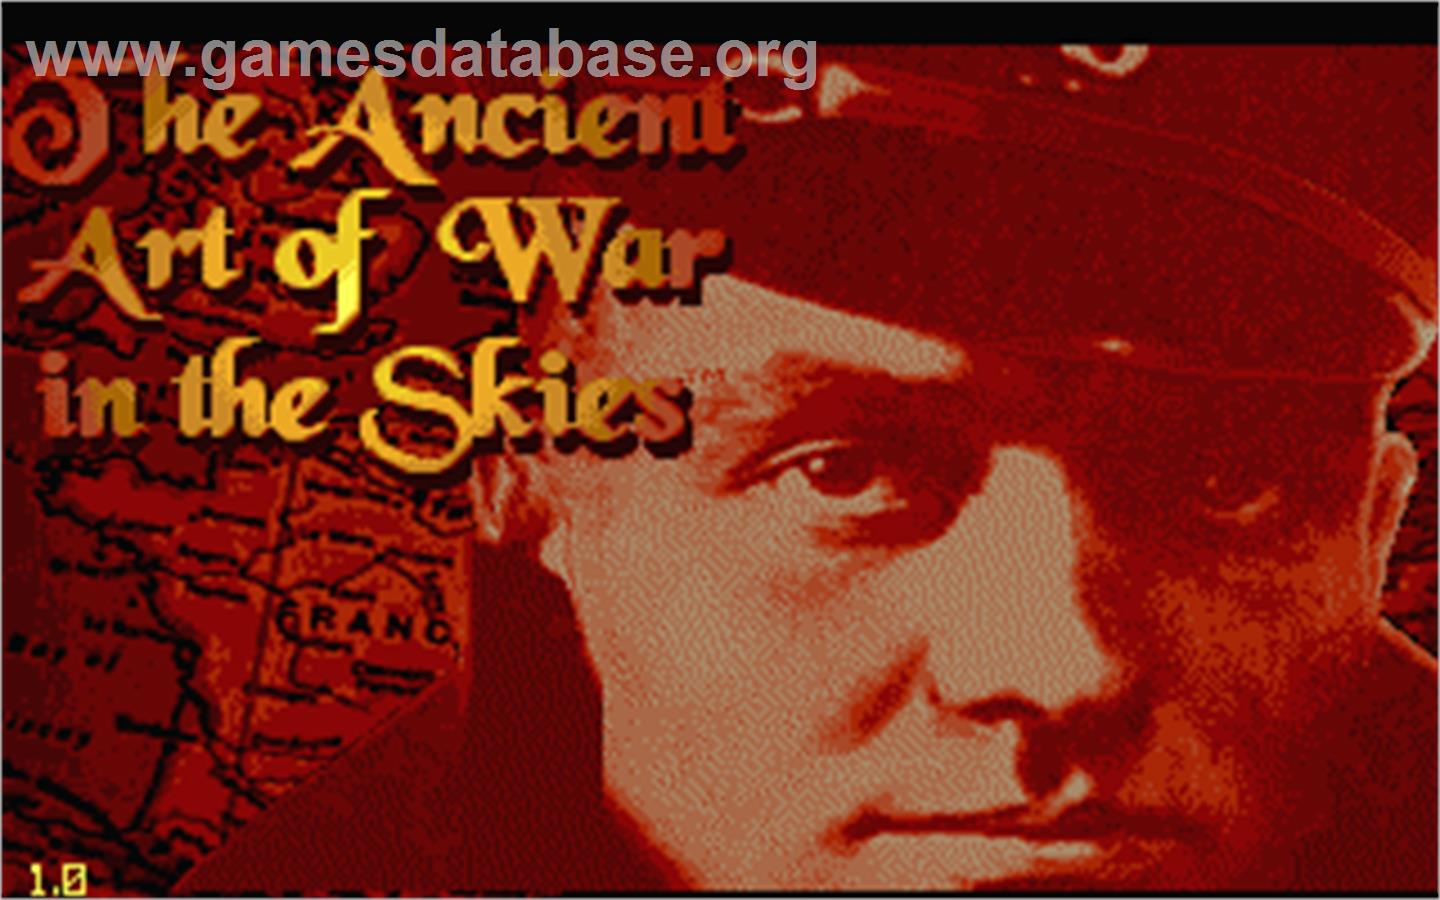 Ancient Art of War in the Skies - Atari ST - Artwork - Title Screen